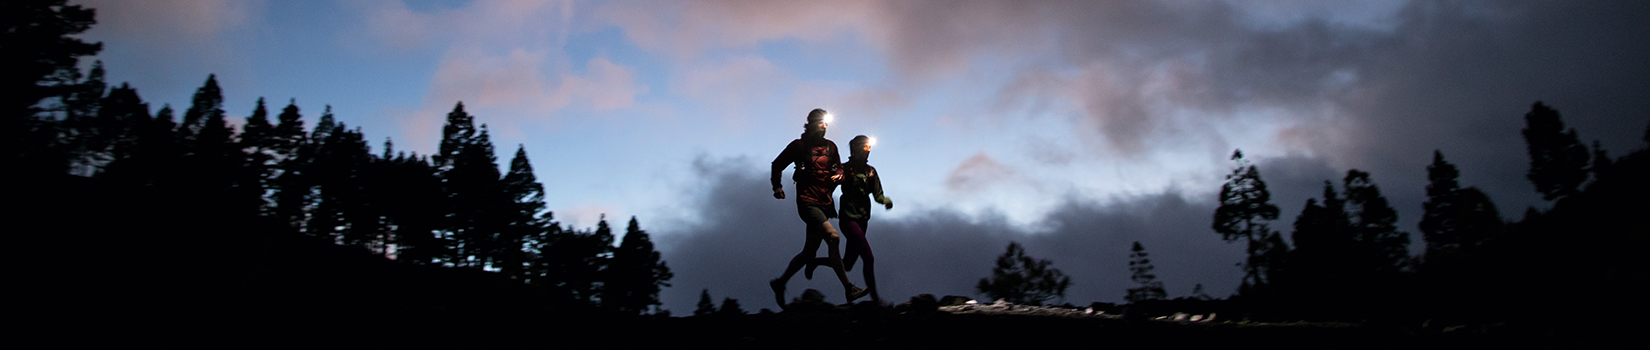 Das Bild zeigt zwei Läufer im Dunkeln mit Stirnlampen